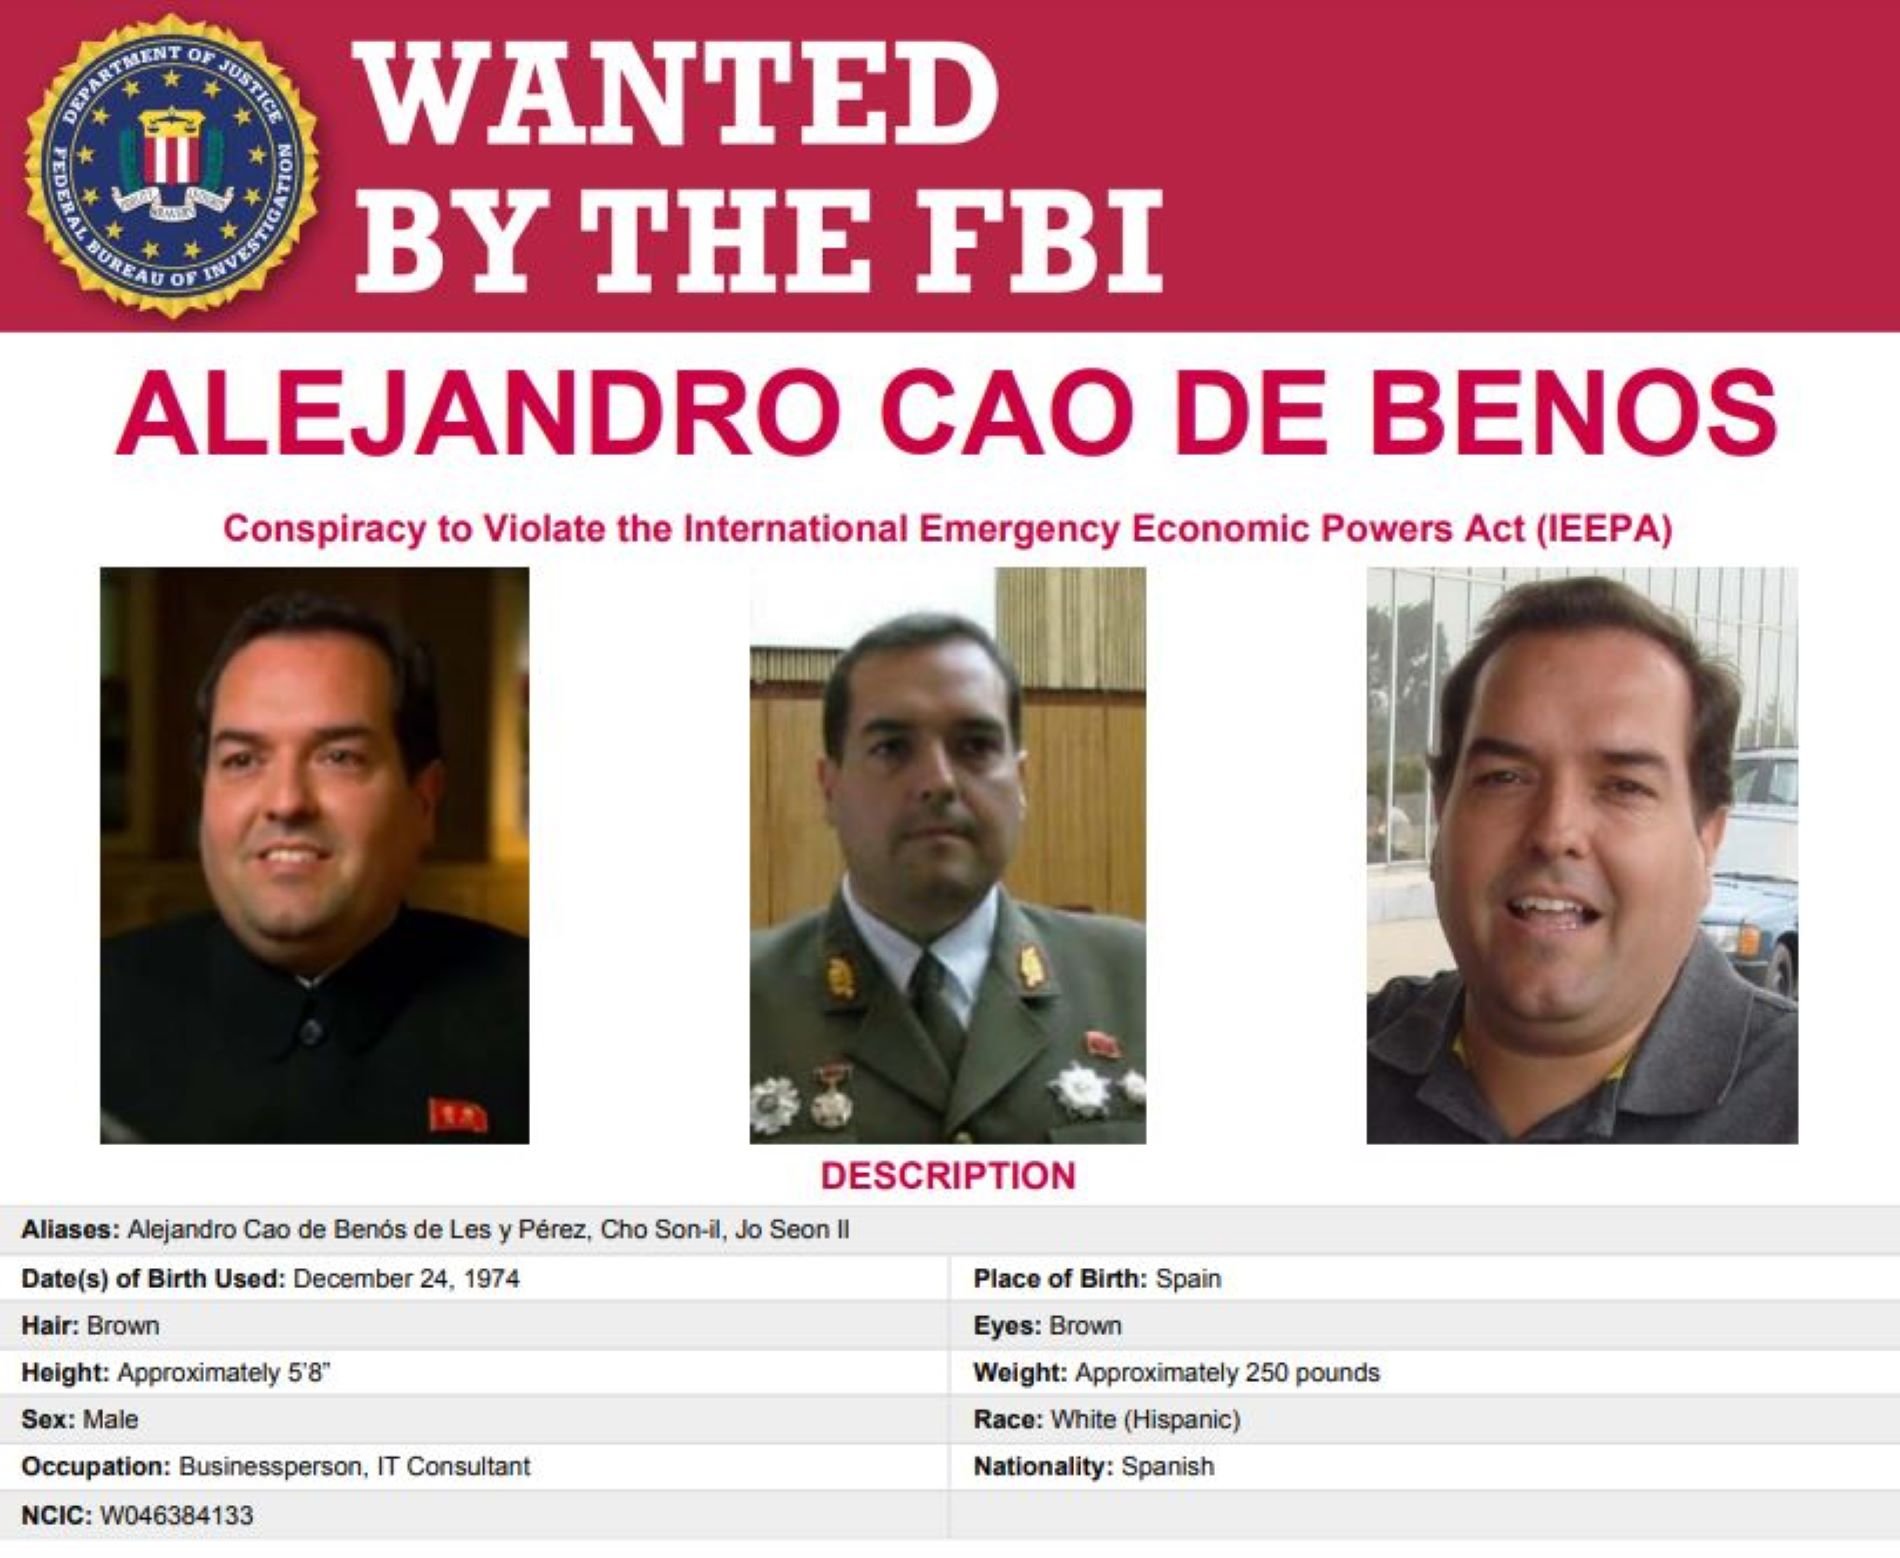 Ordre de crida i cerca de l'FBI contra el català Cao de Benós